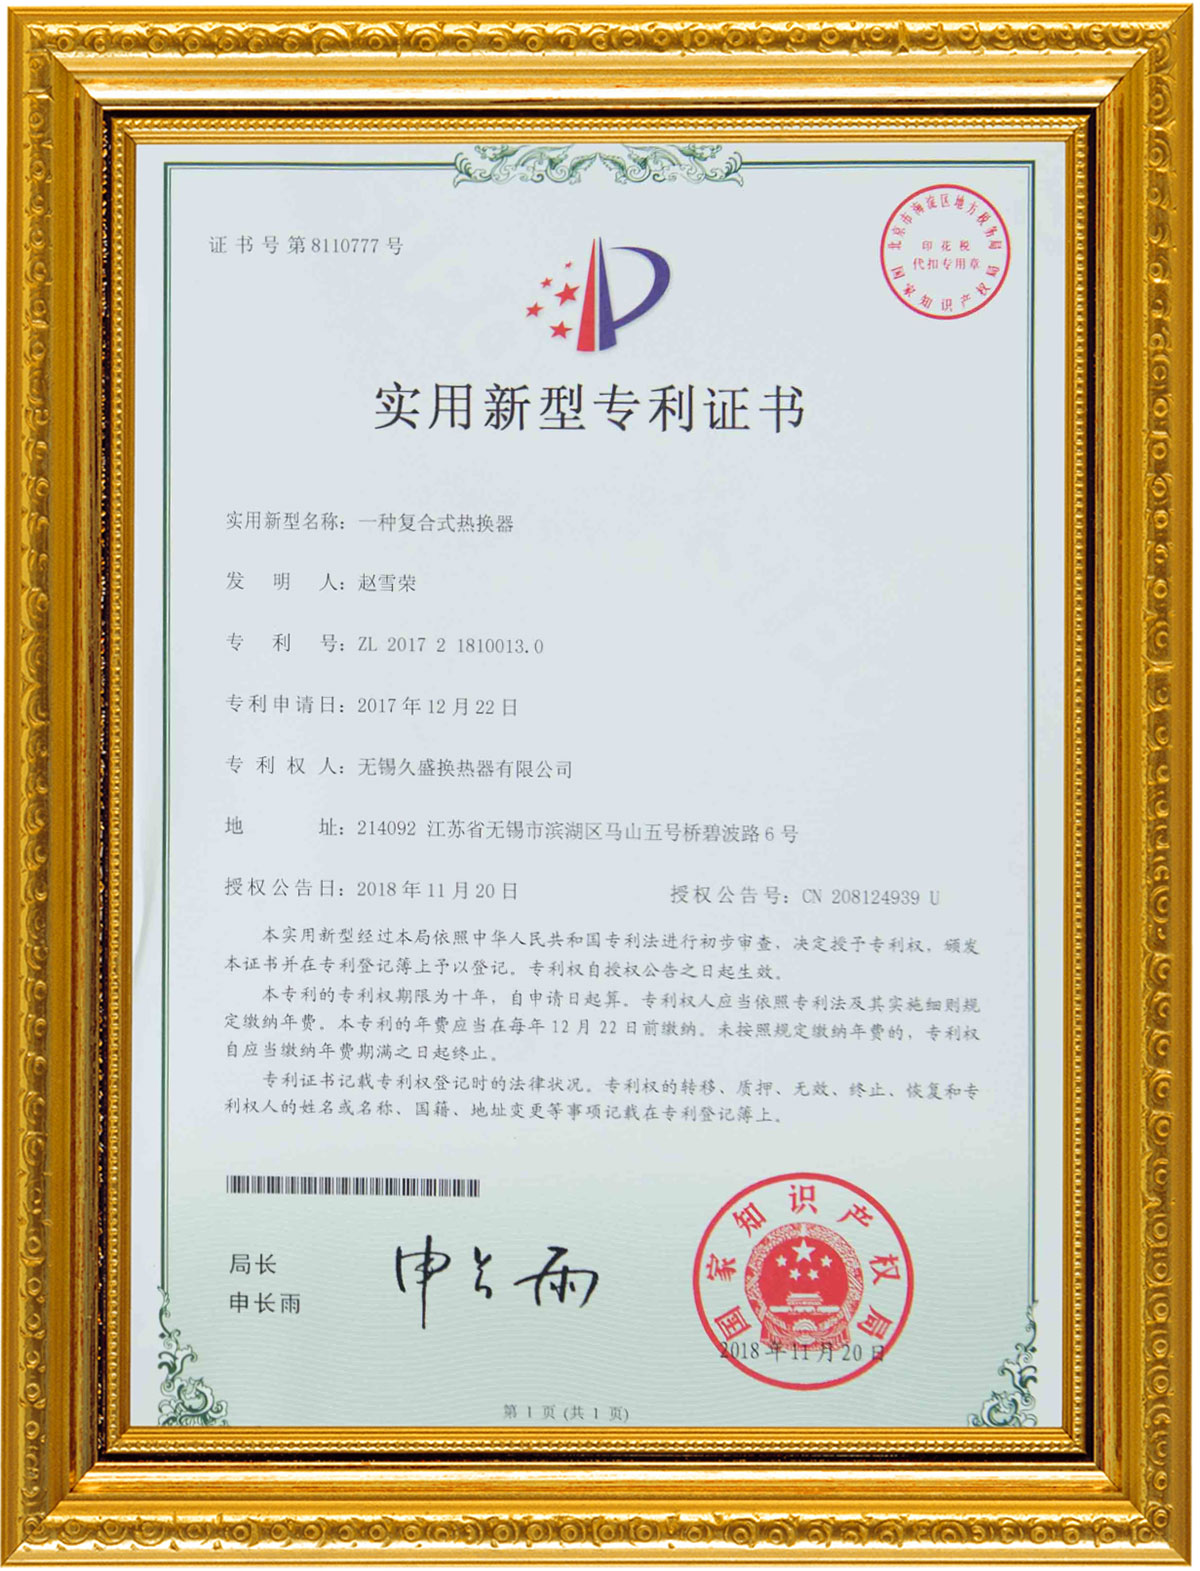 certificate655g